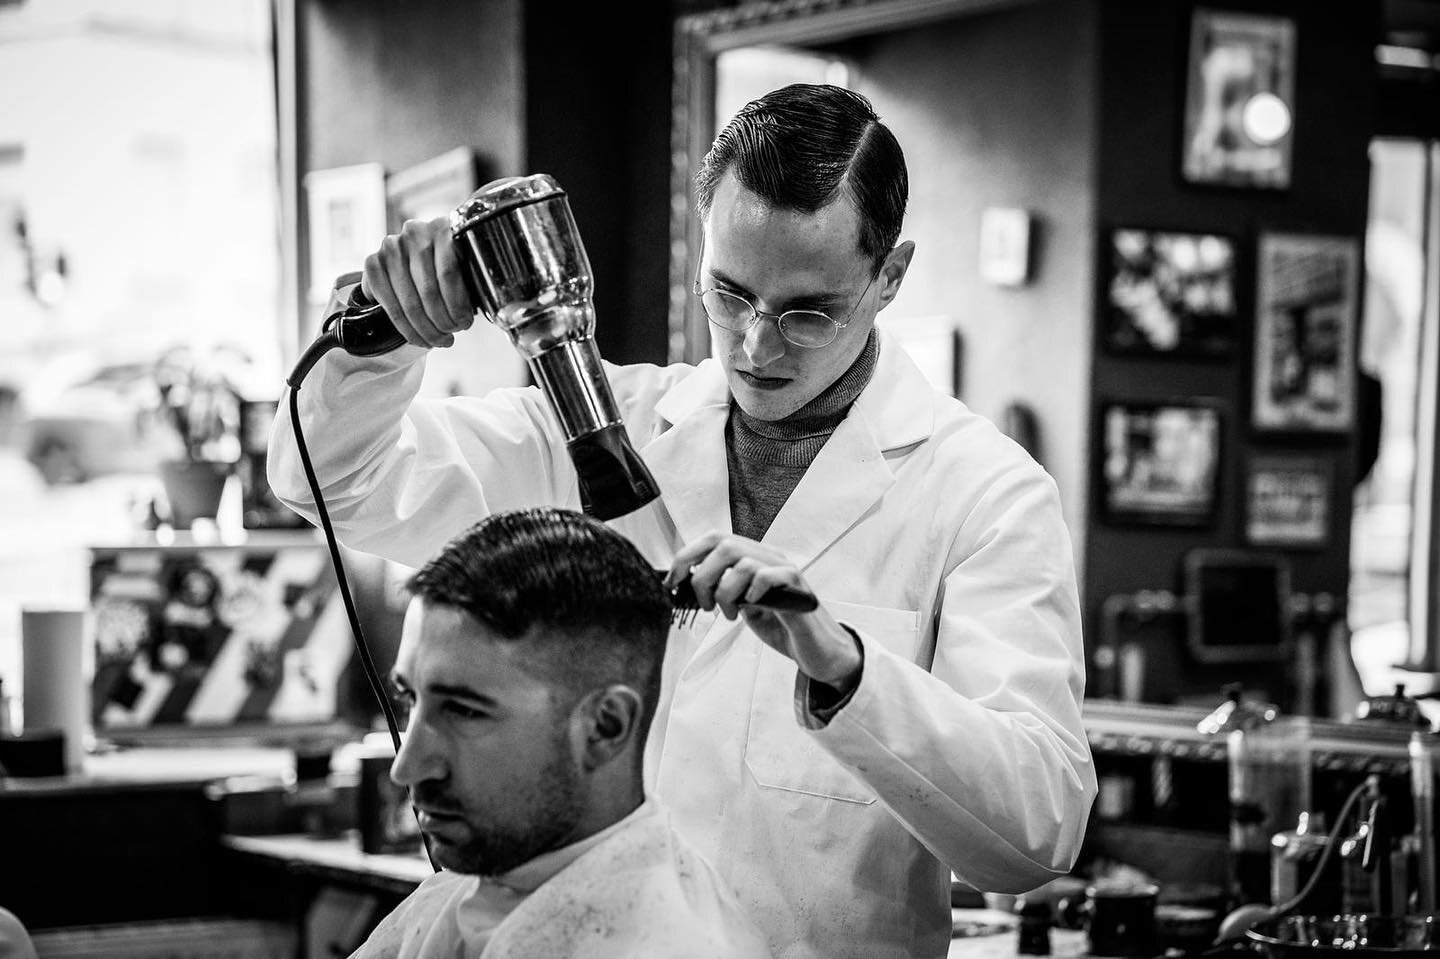 Guest Barber 🚨 

Nos pr&oacute;ximos dias 28 e 29 de Junho temos o prazer de receber na nossa loja  o nosso amigo @obi_chobi, barbeiro na famosa barbearia cl&aacute;ssica @torreto_barbershop em Frankfurt. Para marca&ccedil;&otilde;es, enviar mensage